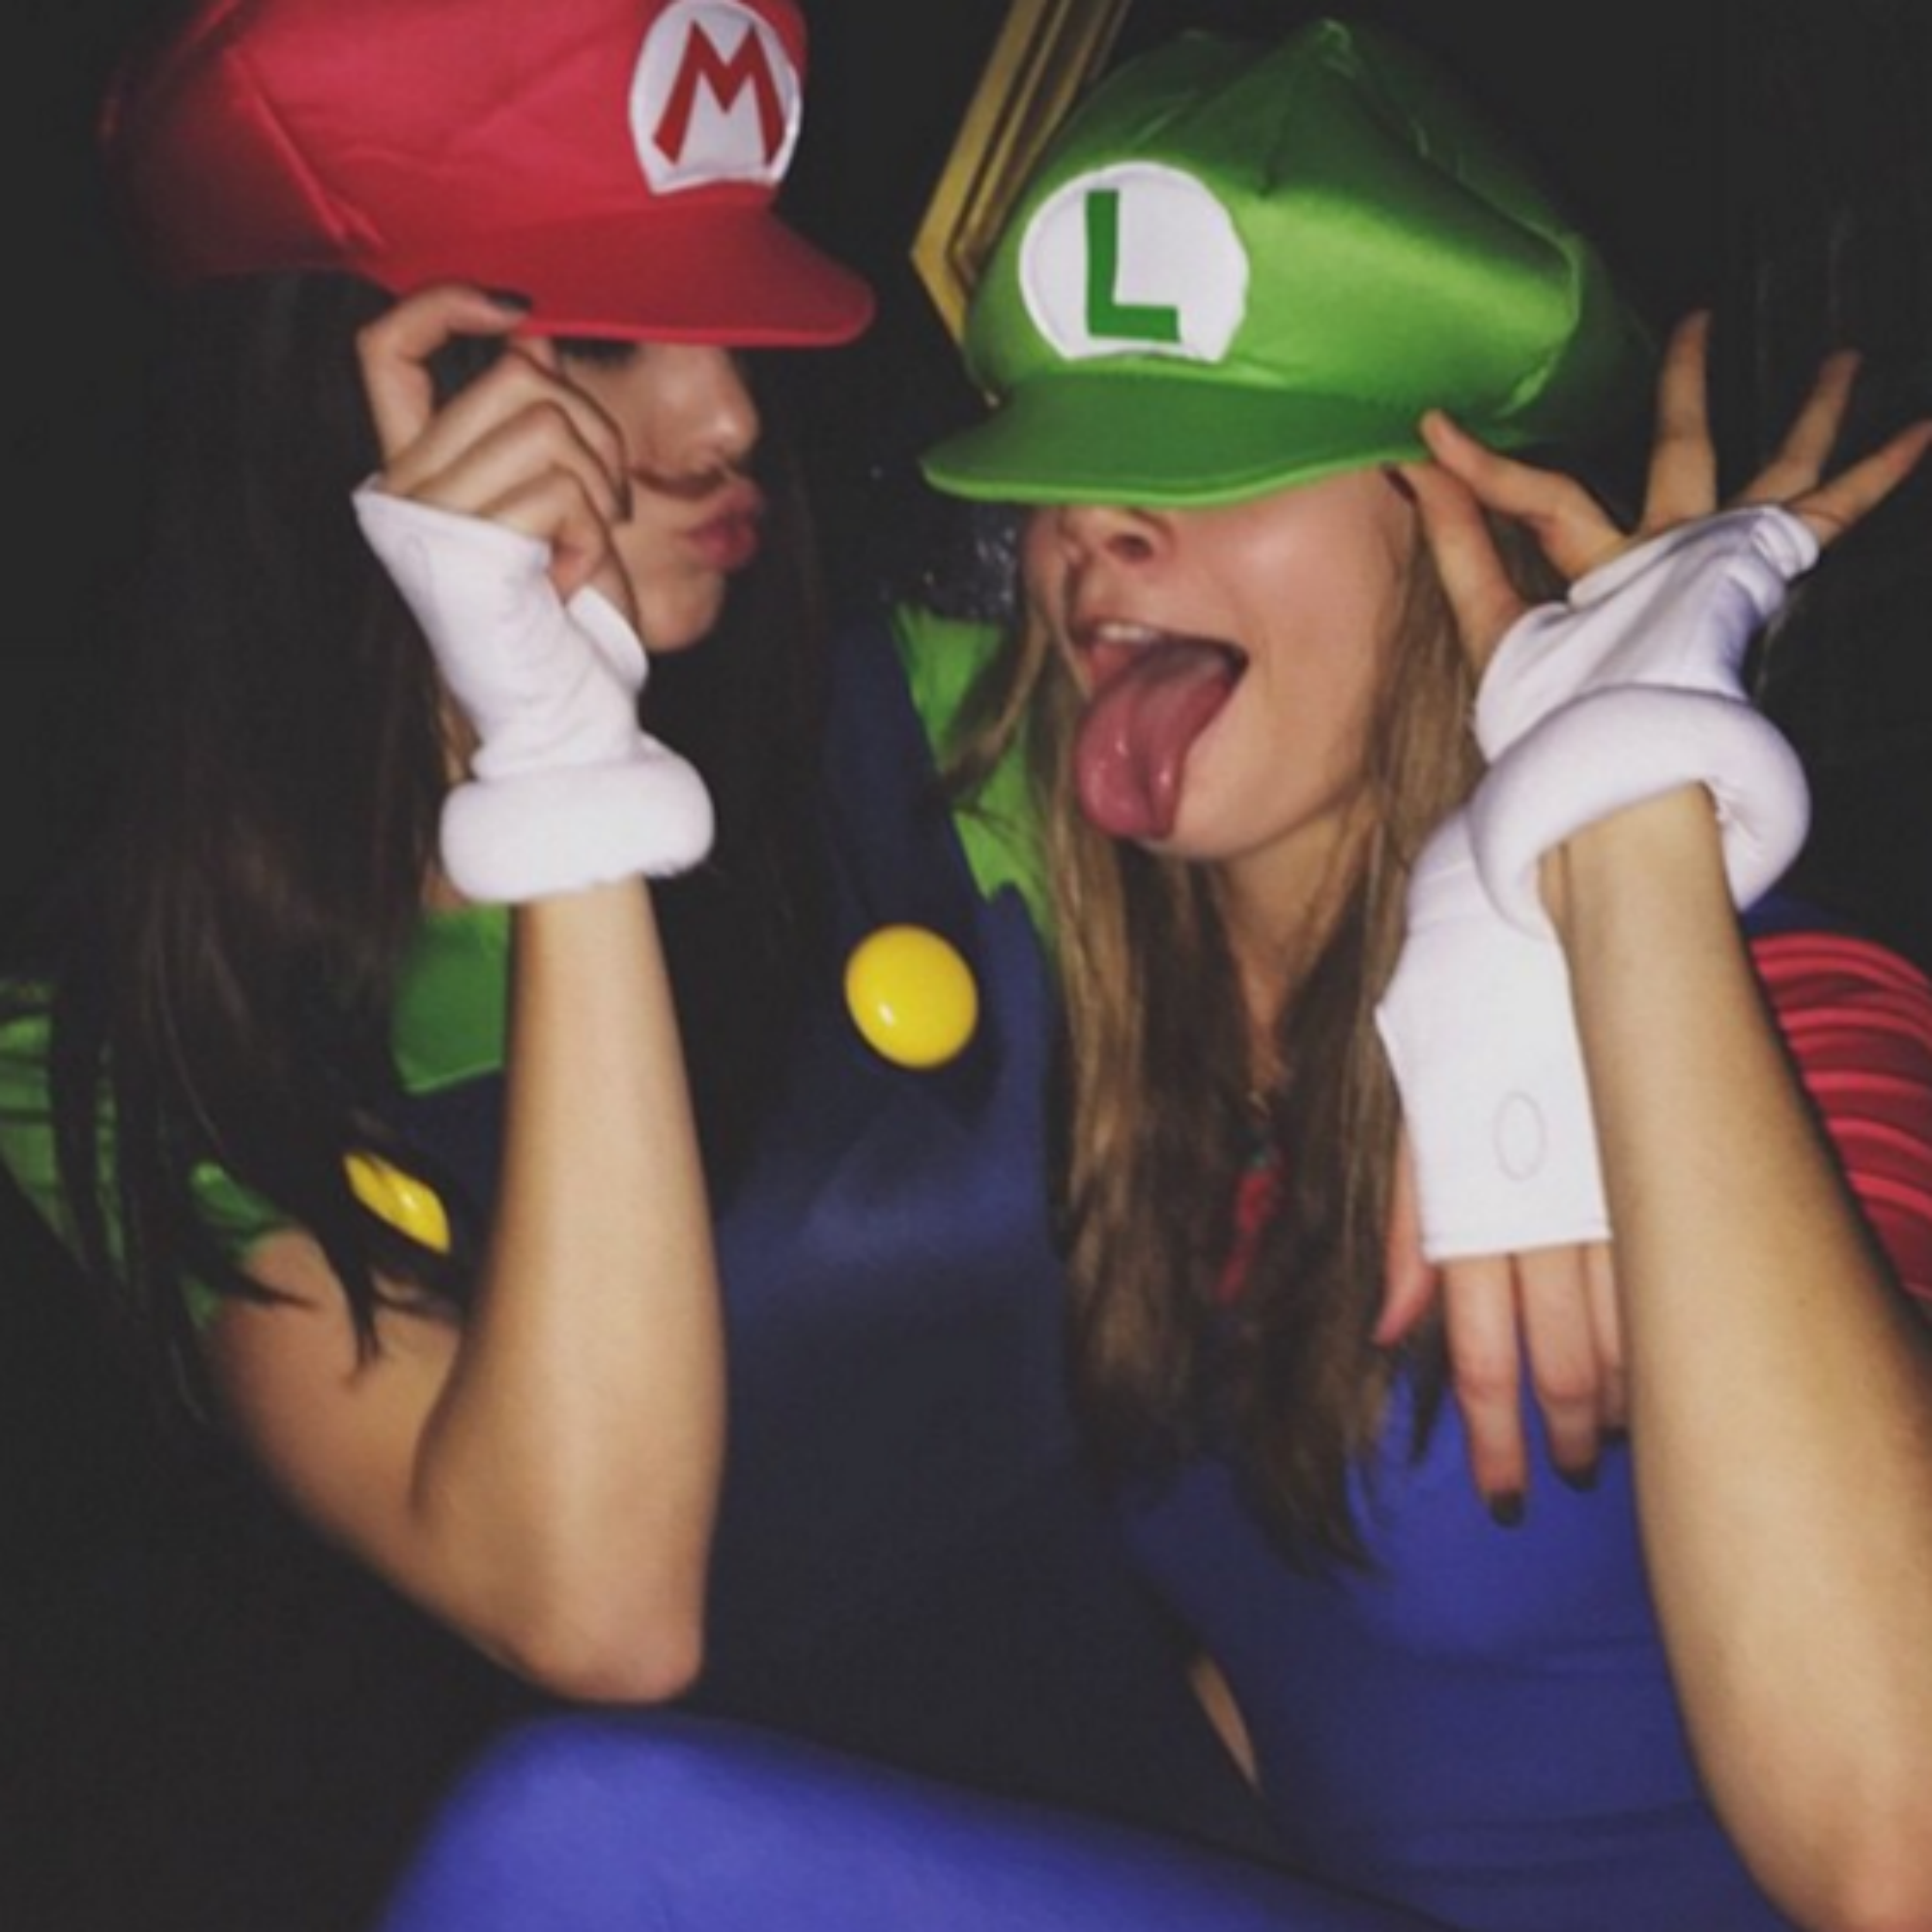 Le modelle Kendall Jenner e Cara Delevingne alias Mario e Luigi del videogame 'Supermario Bros.' (foto dal profilo Instagram di Cara Delevingne)